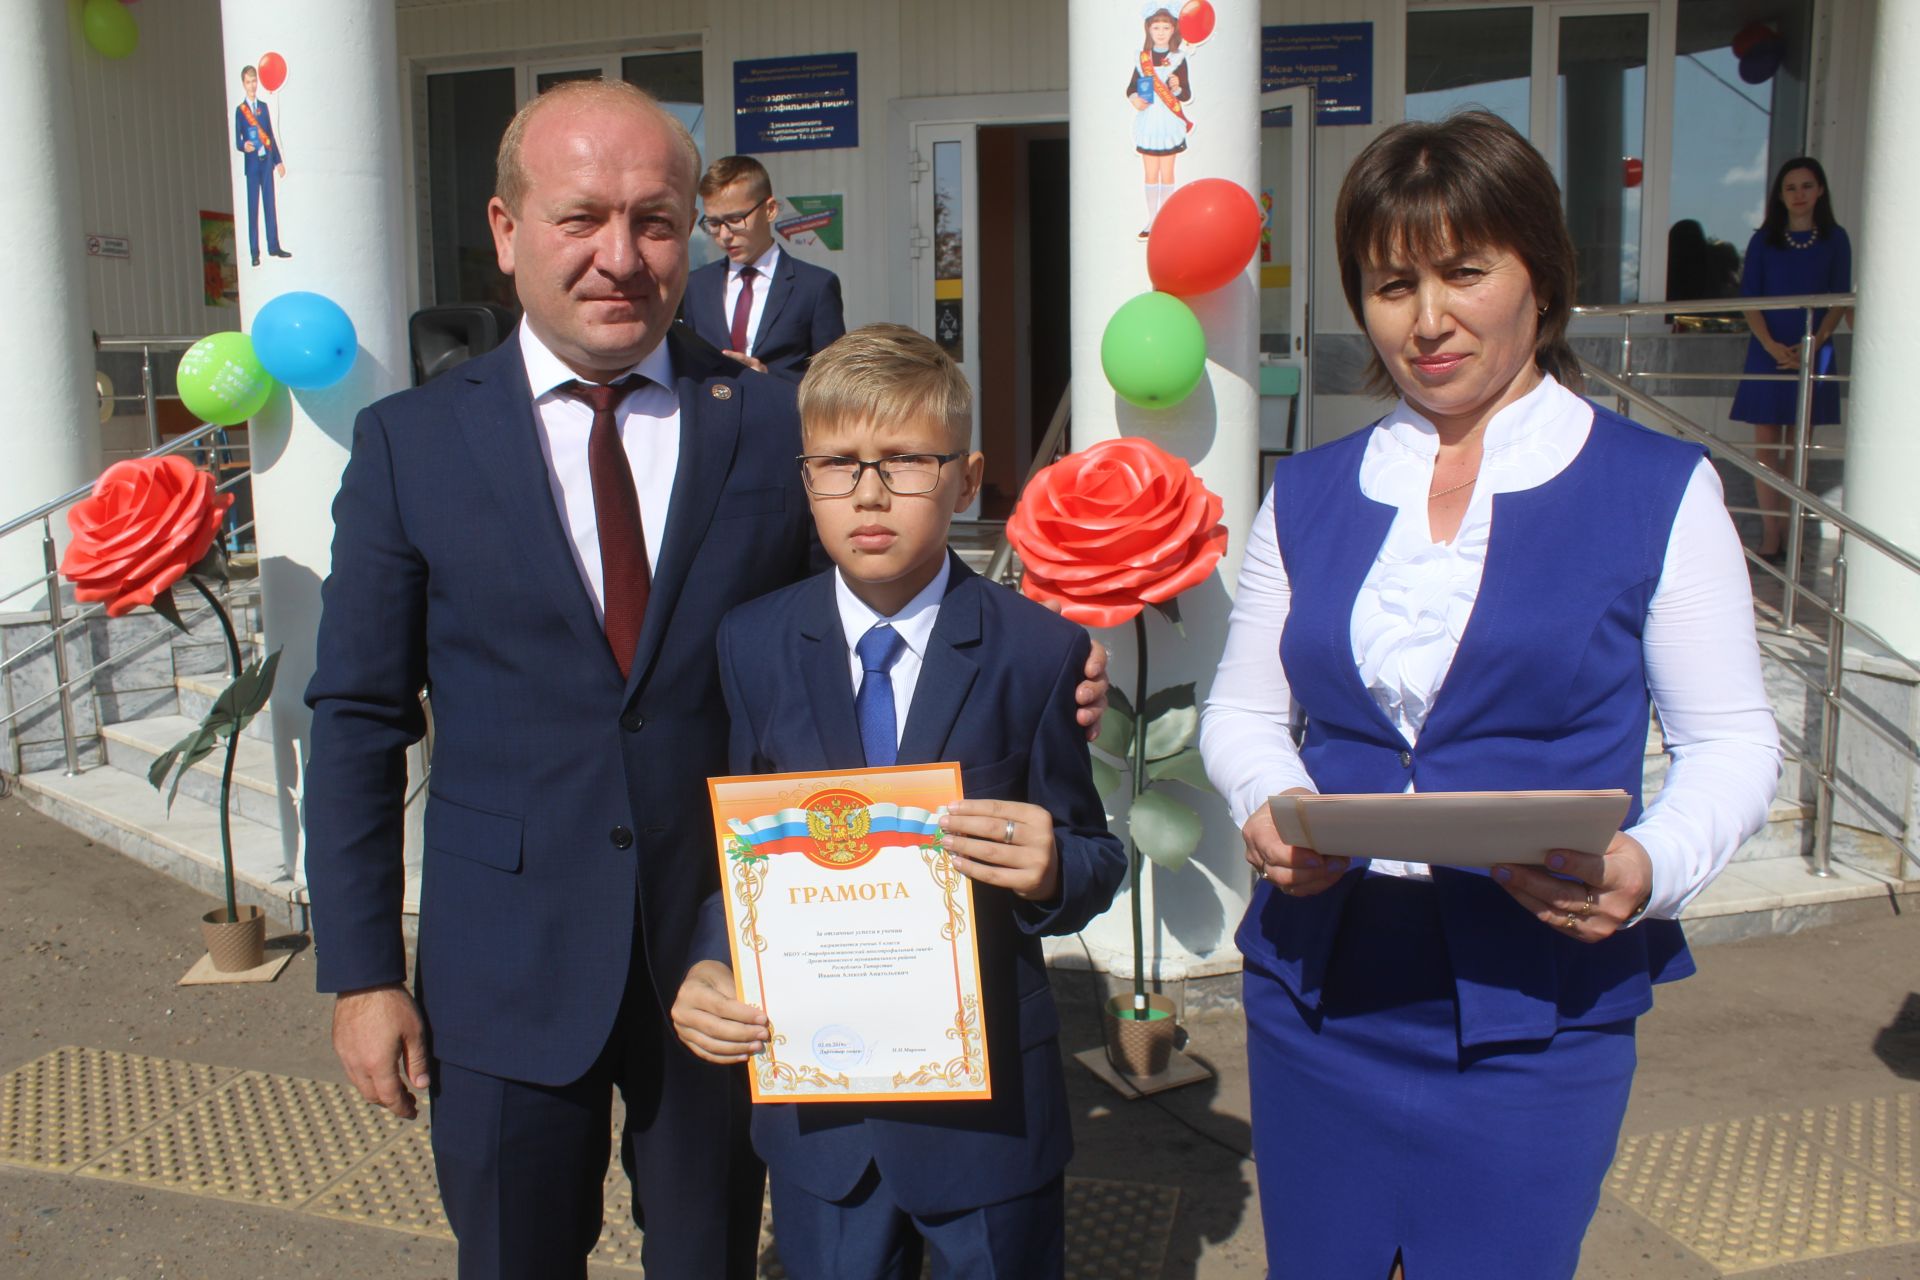 30 образовательных учреждений Дрожжановского района открыли сегодня свои двери для учащихся